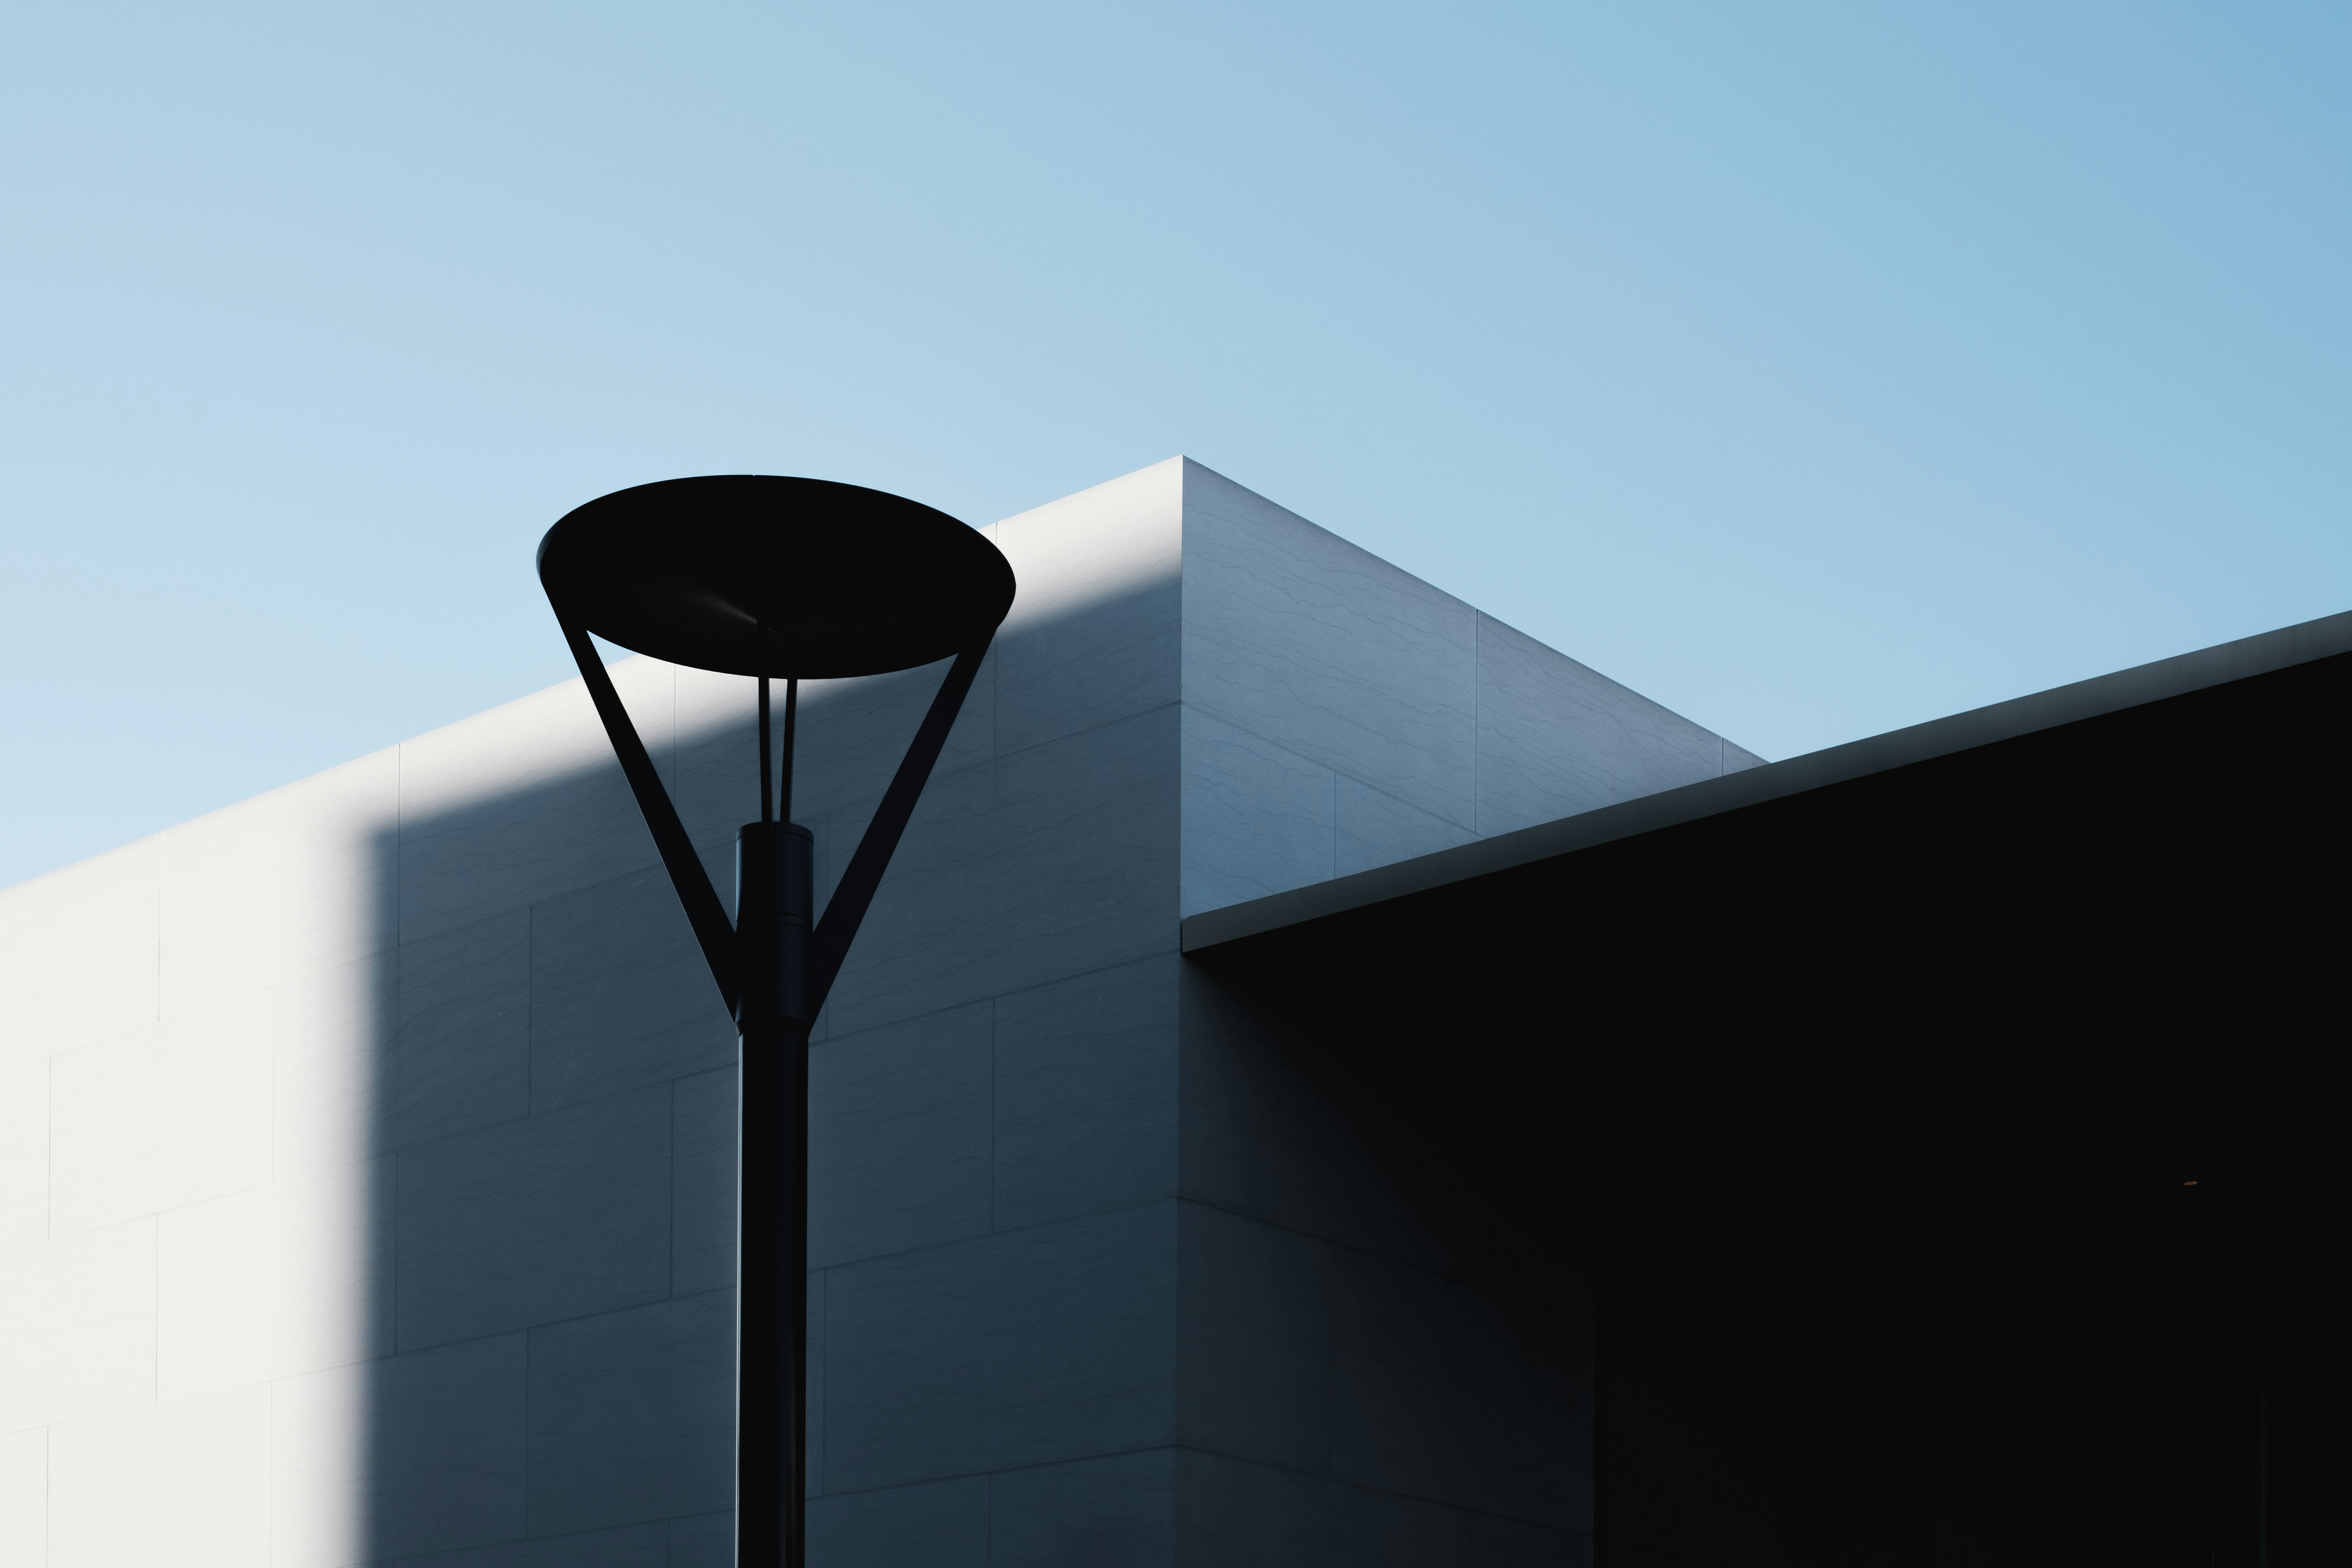 black post lamp beside white building